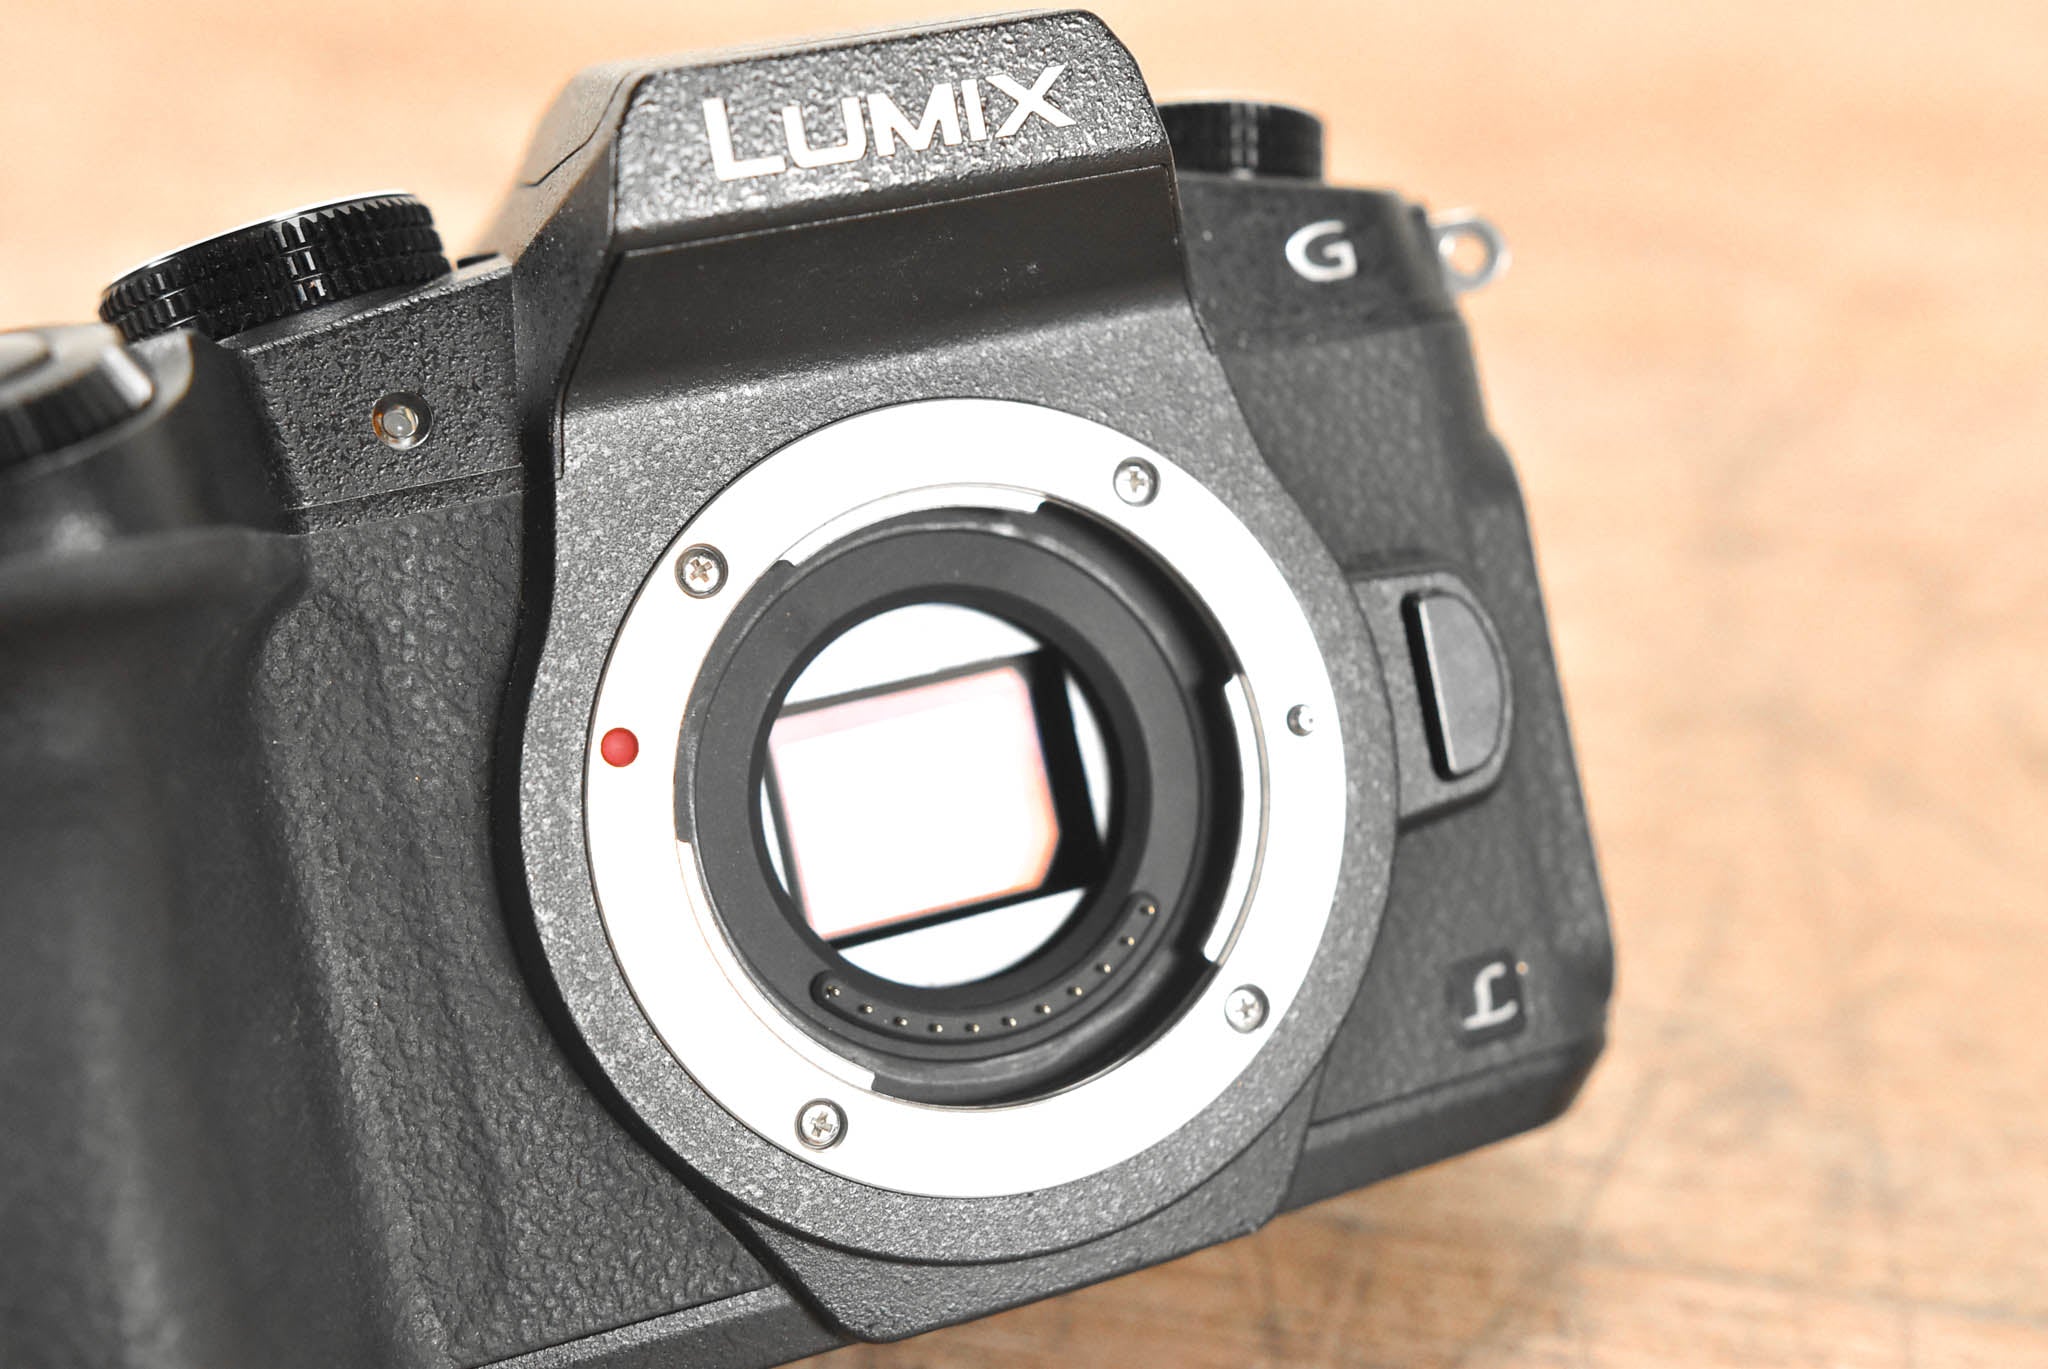 Panasonic Lumix DMC-G85 Mirrorless Camera